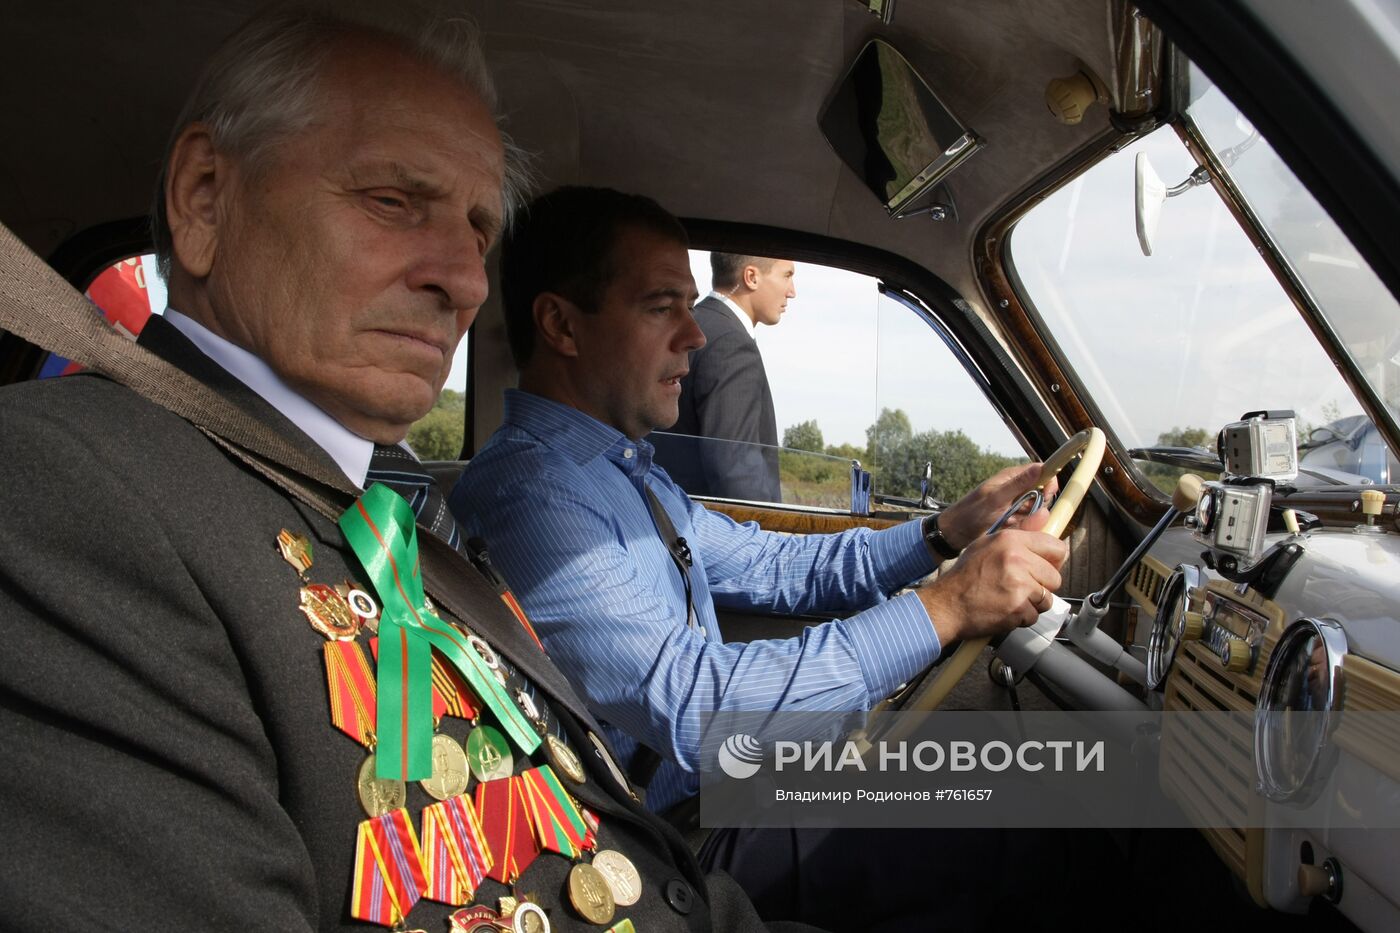 Д.Медведев участвует в автопробеге Петербург-Киев